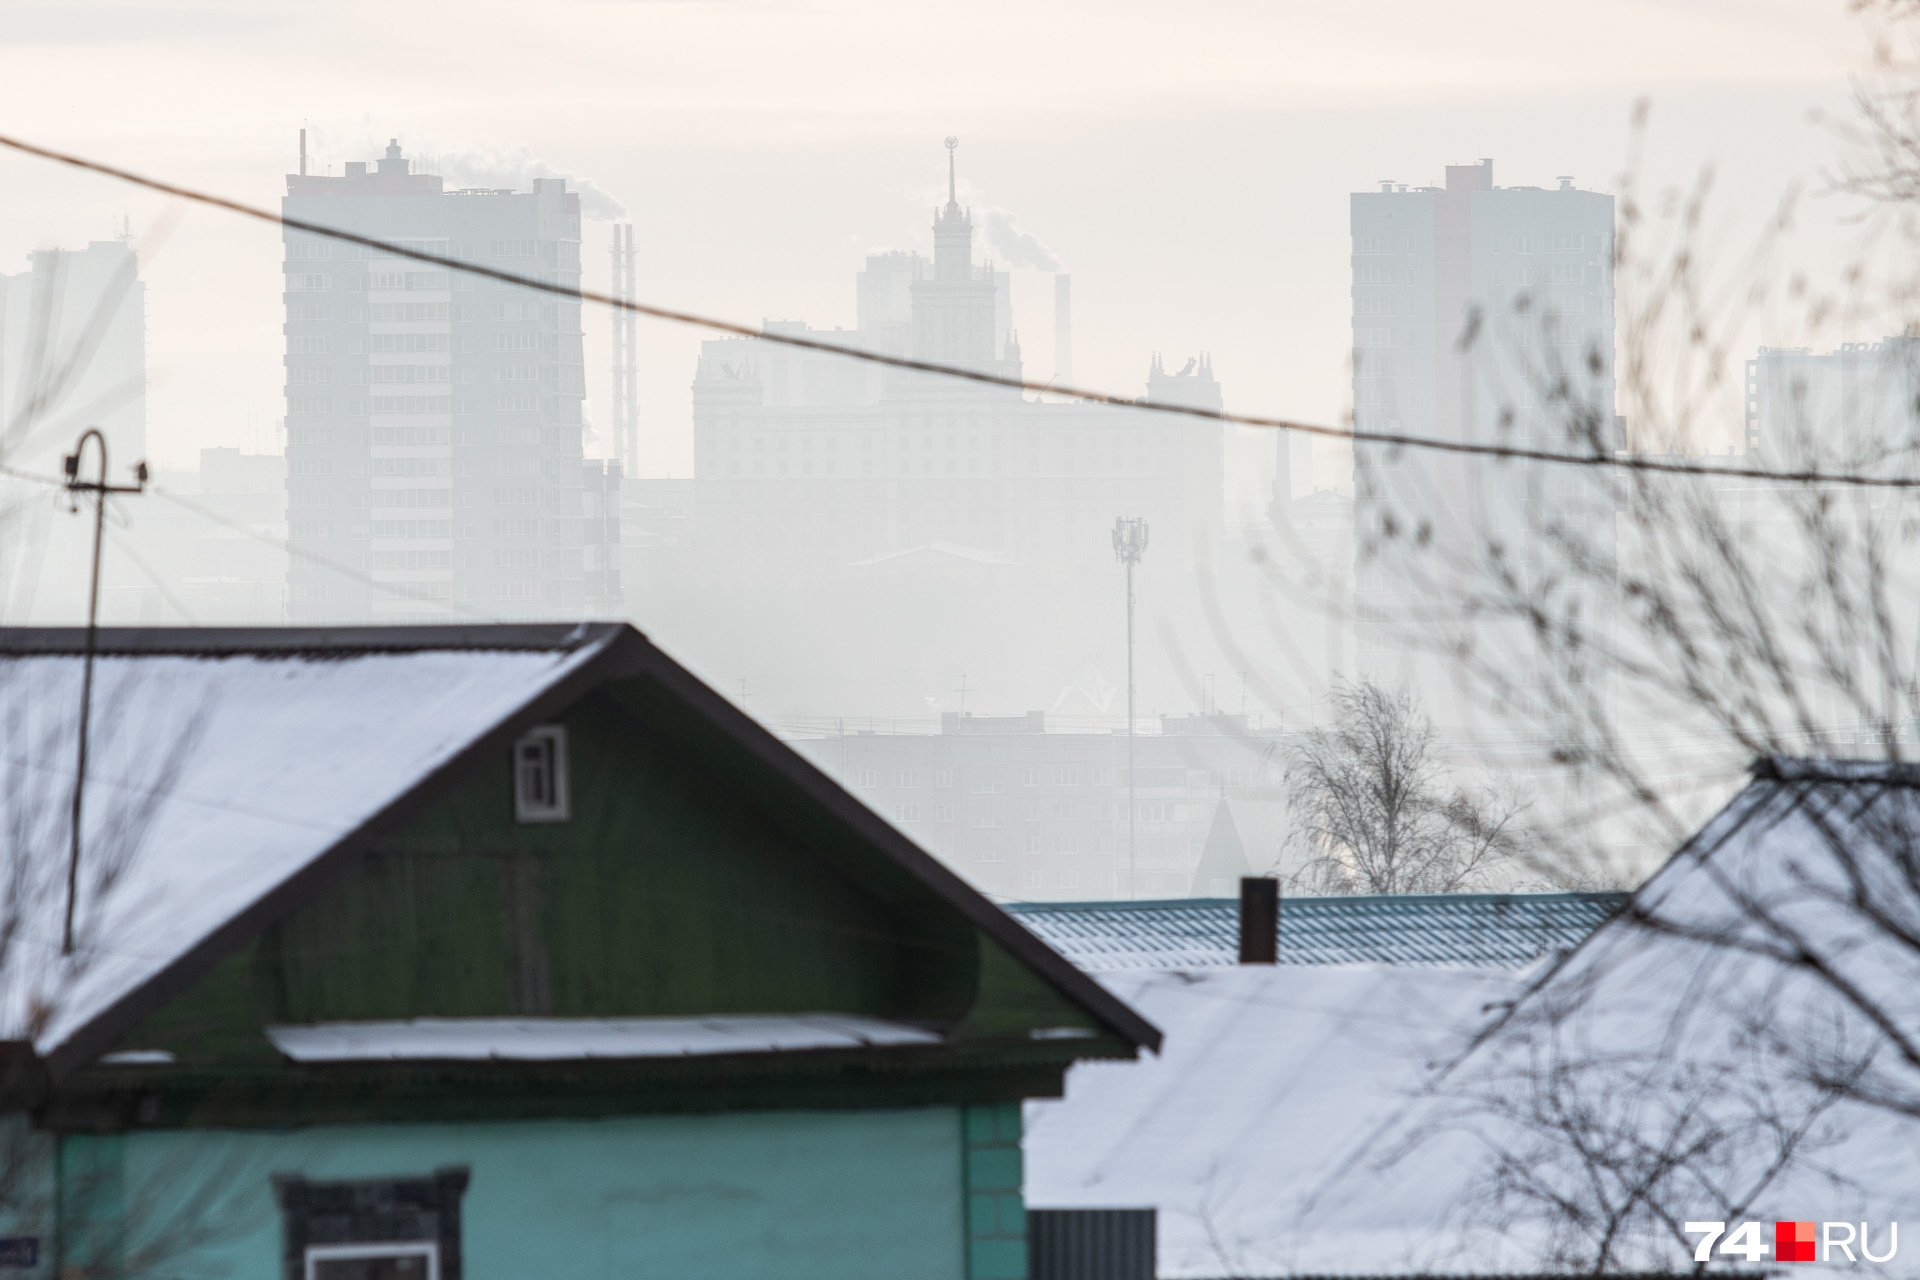 В декабре Челябинск несколько раз накрывало смогом, но в правительстве заверили, что ситуация улучшилась